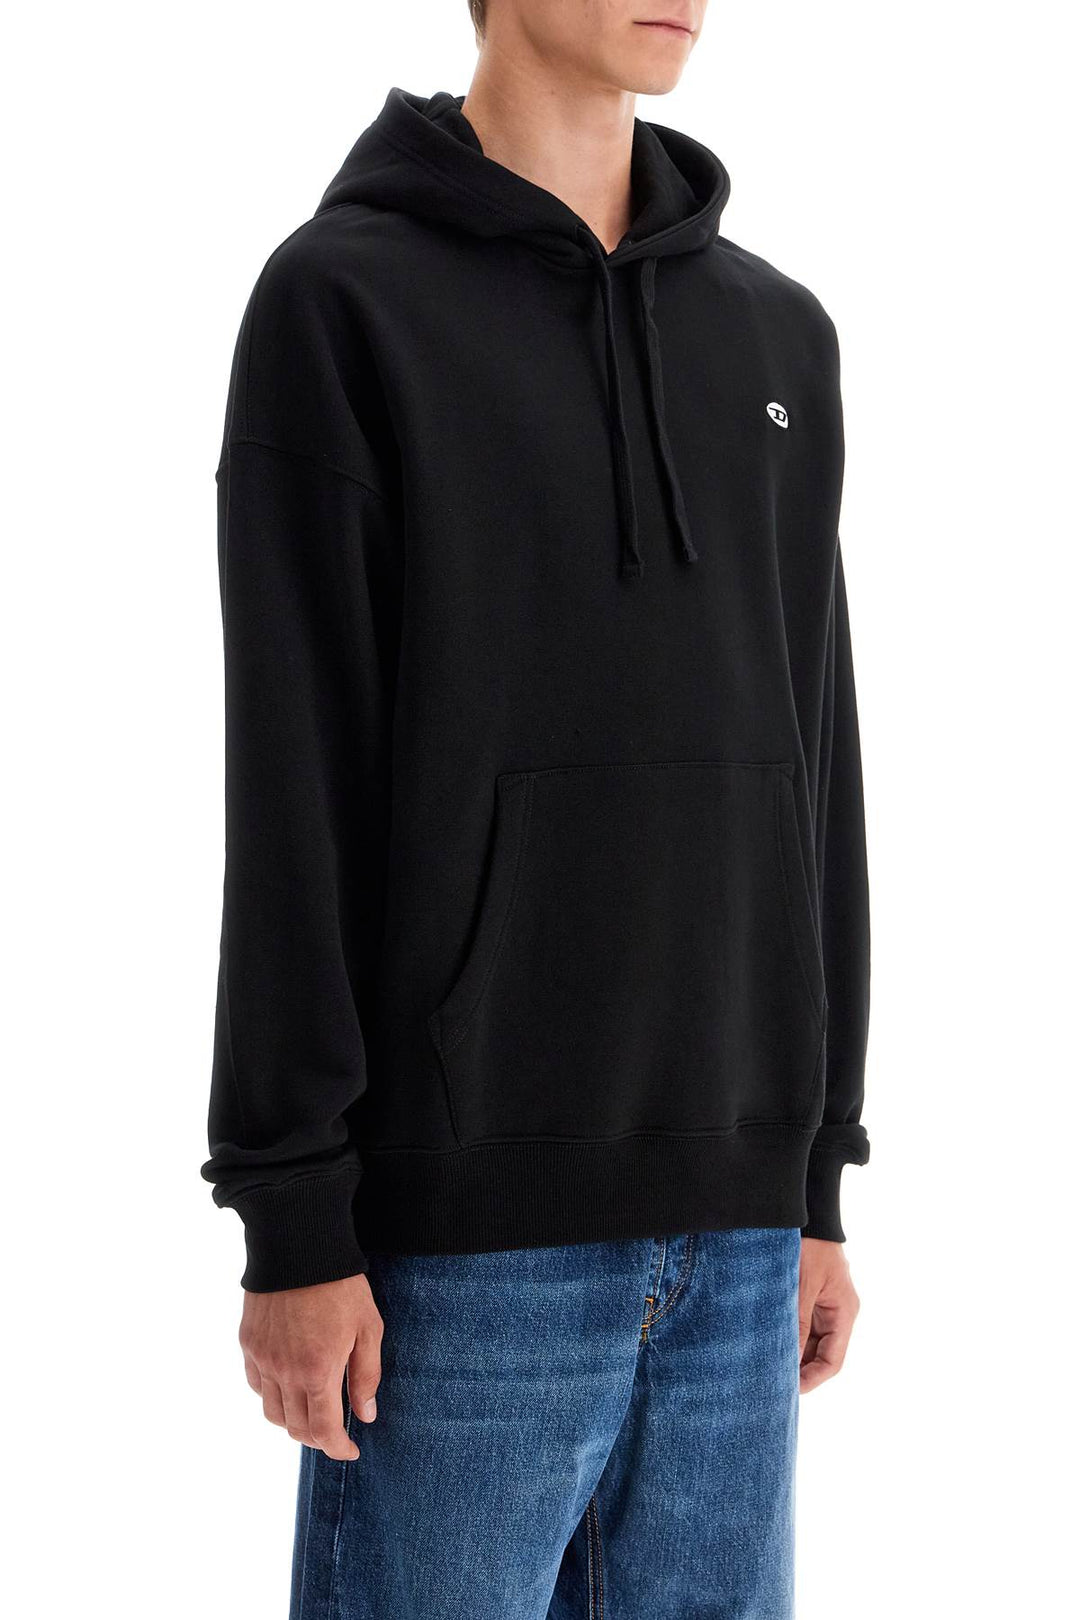 Diesel Hooded Sweatshirt With   Black